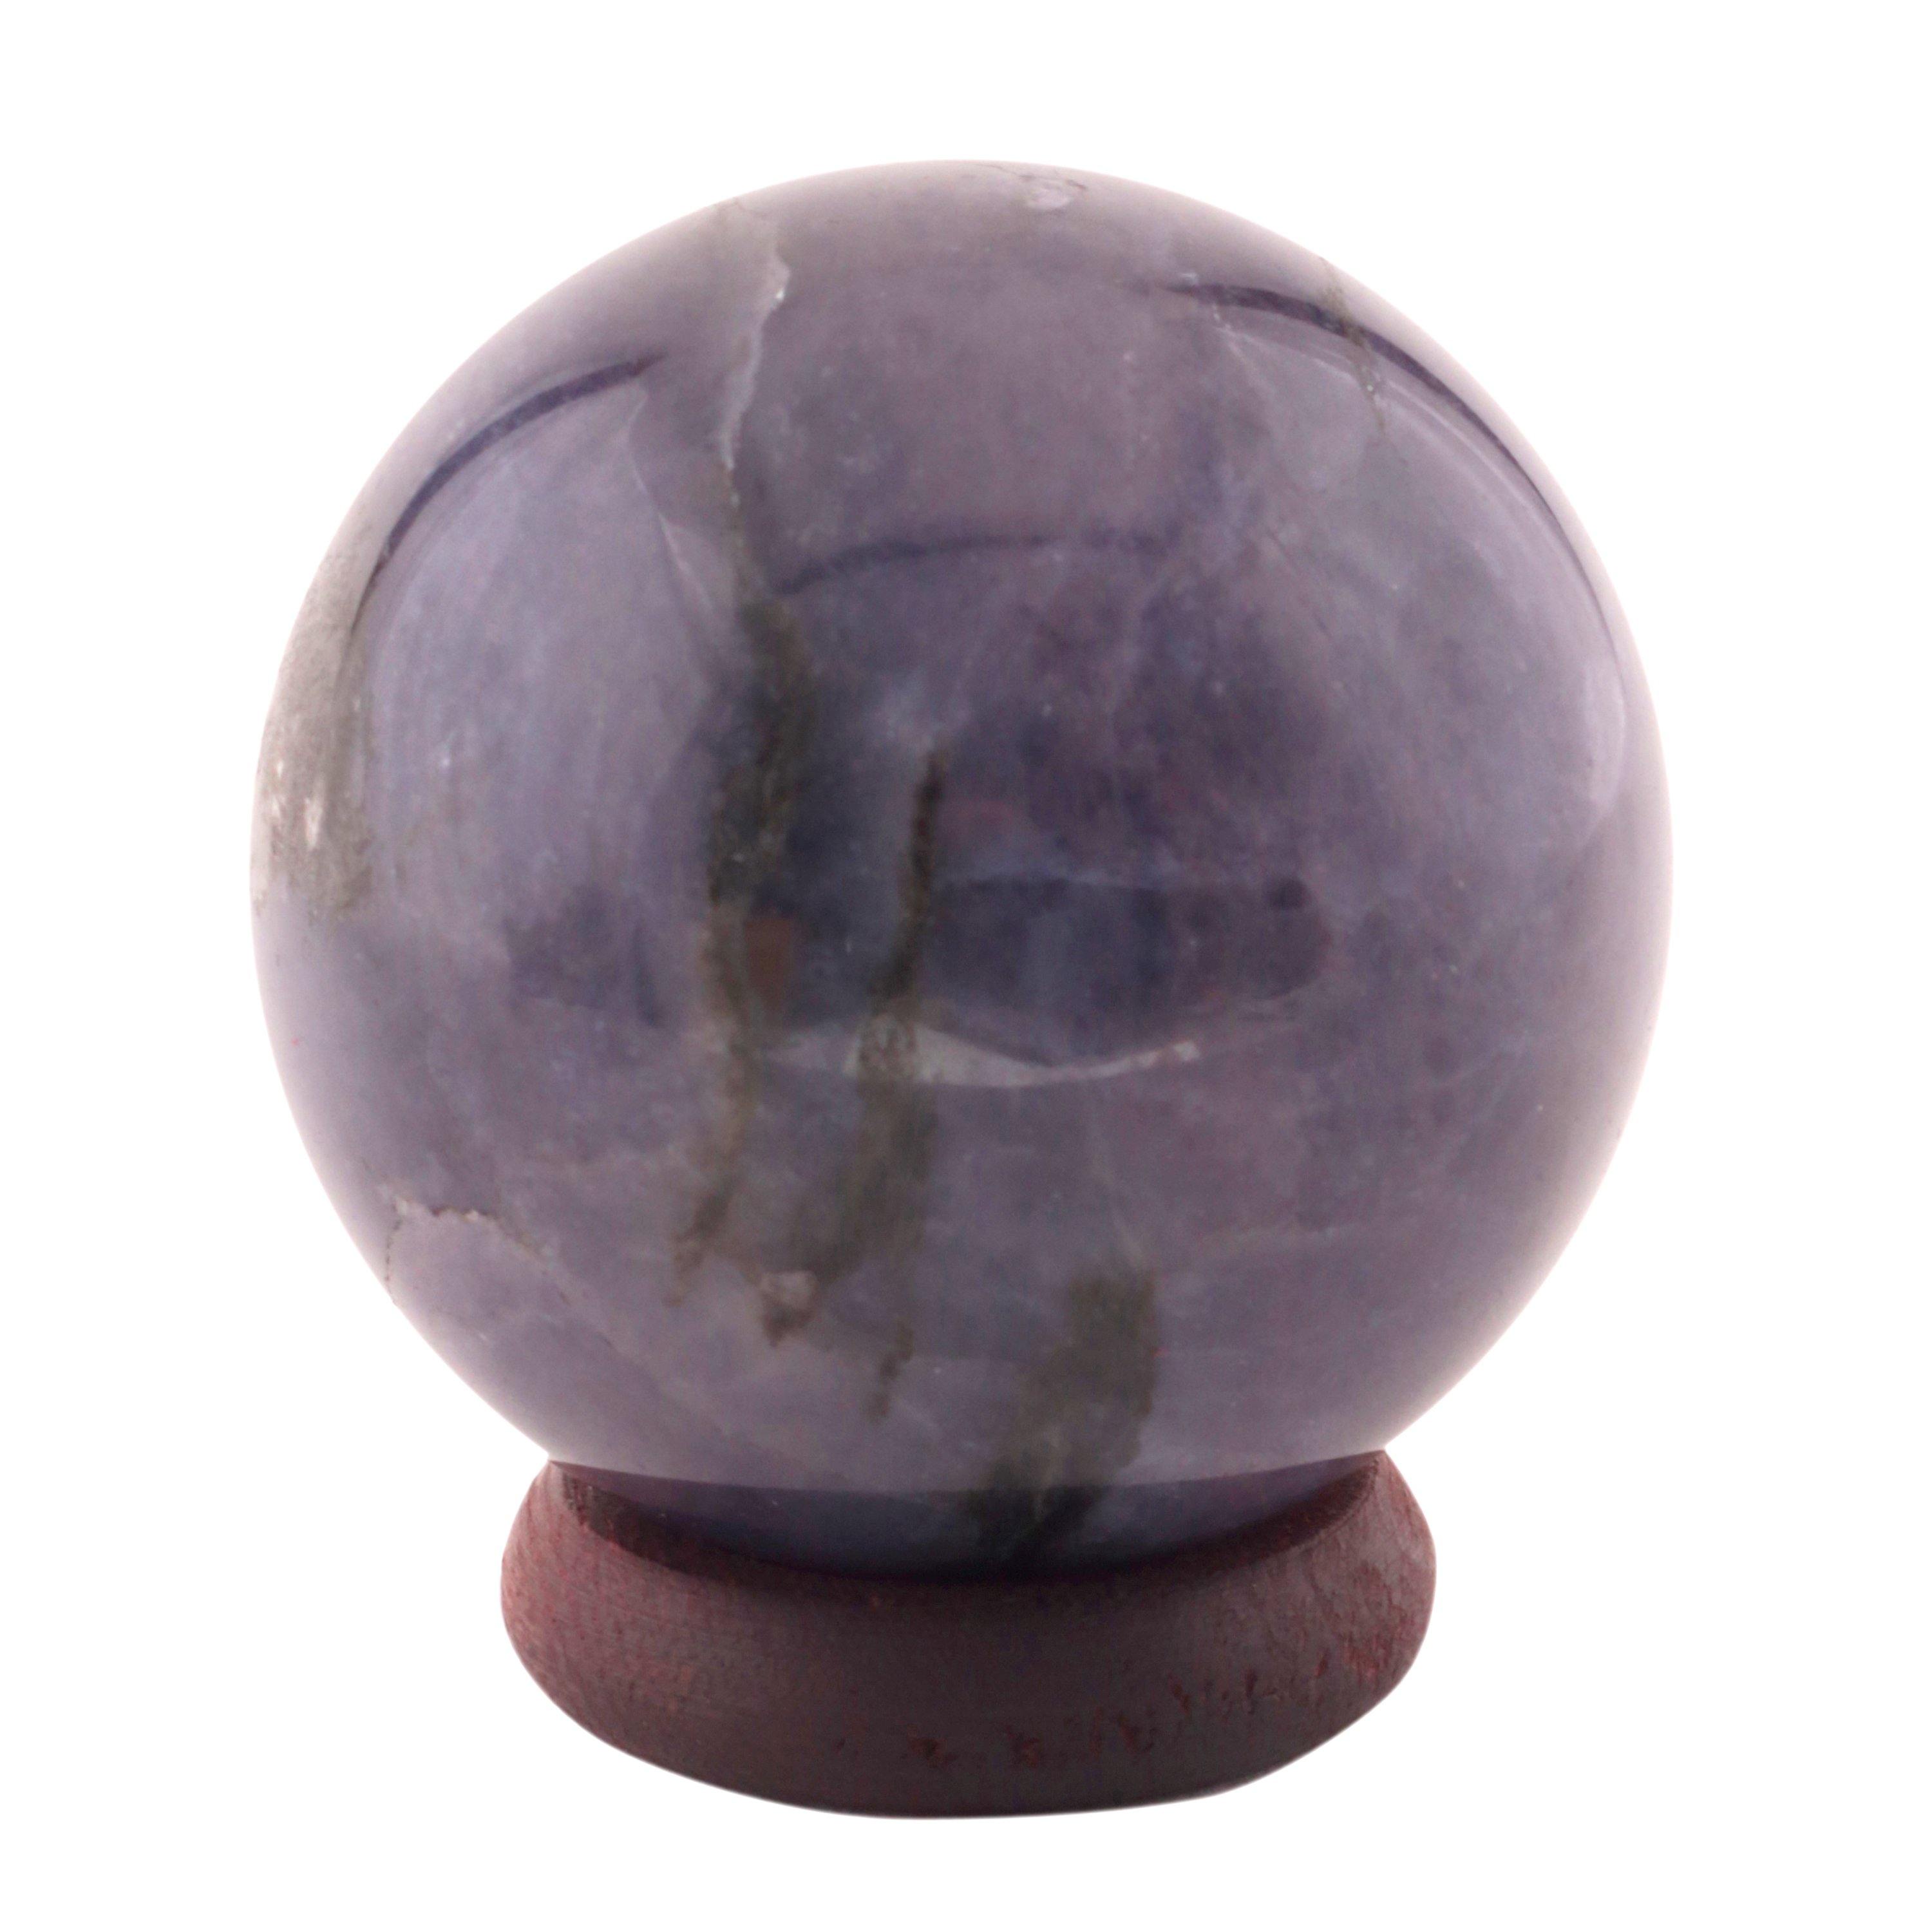 Healing Crystals - Iolite Crystal Sphere 1 Kg Lot